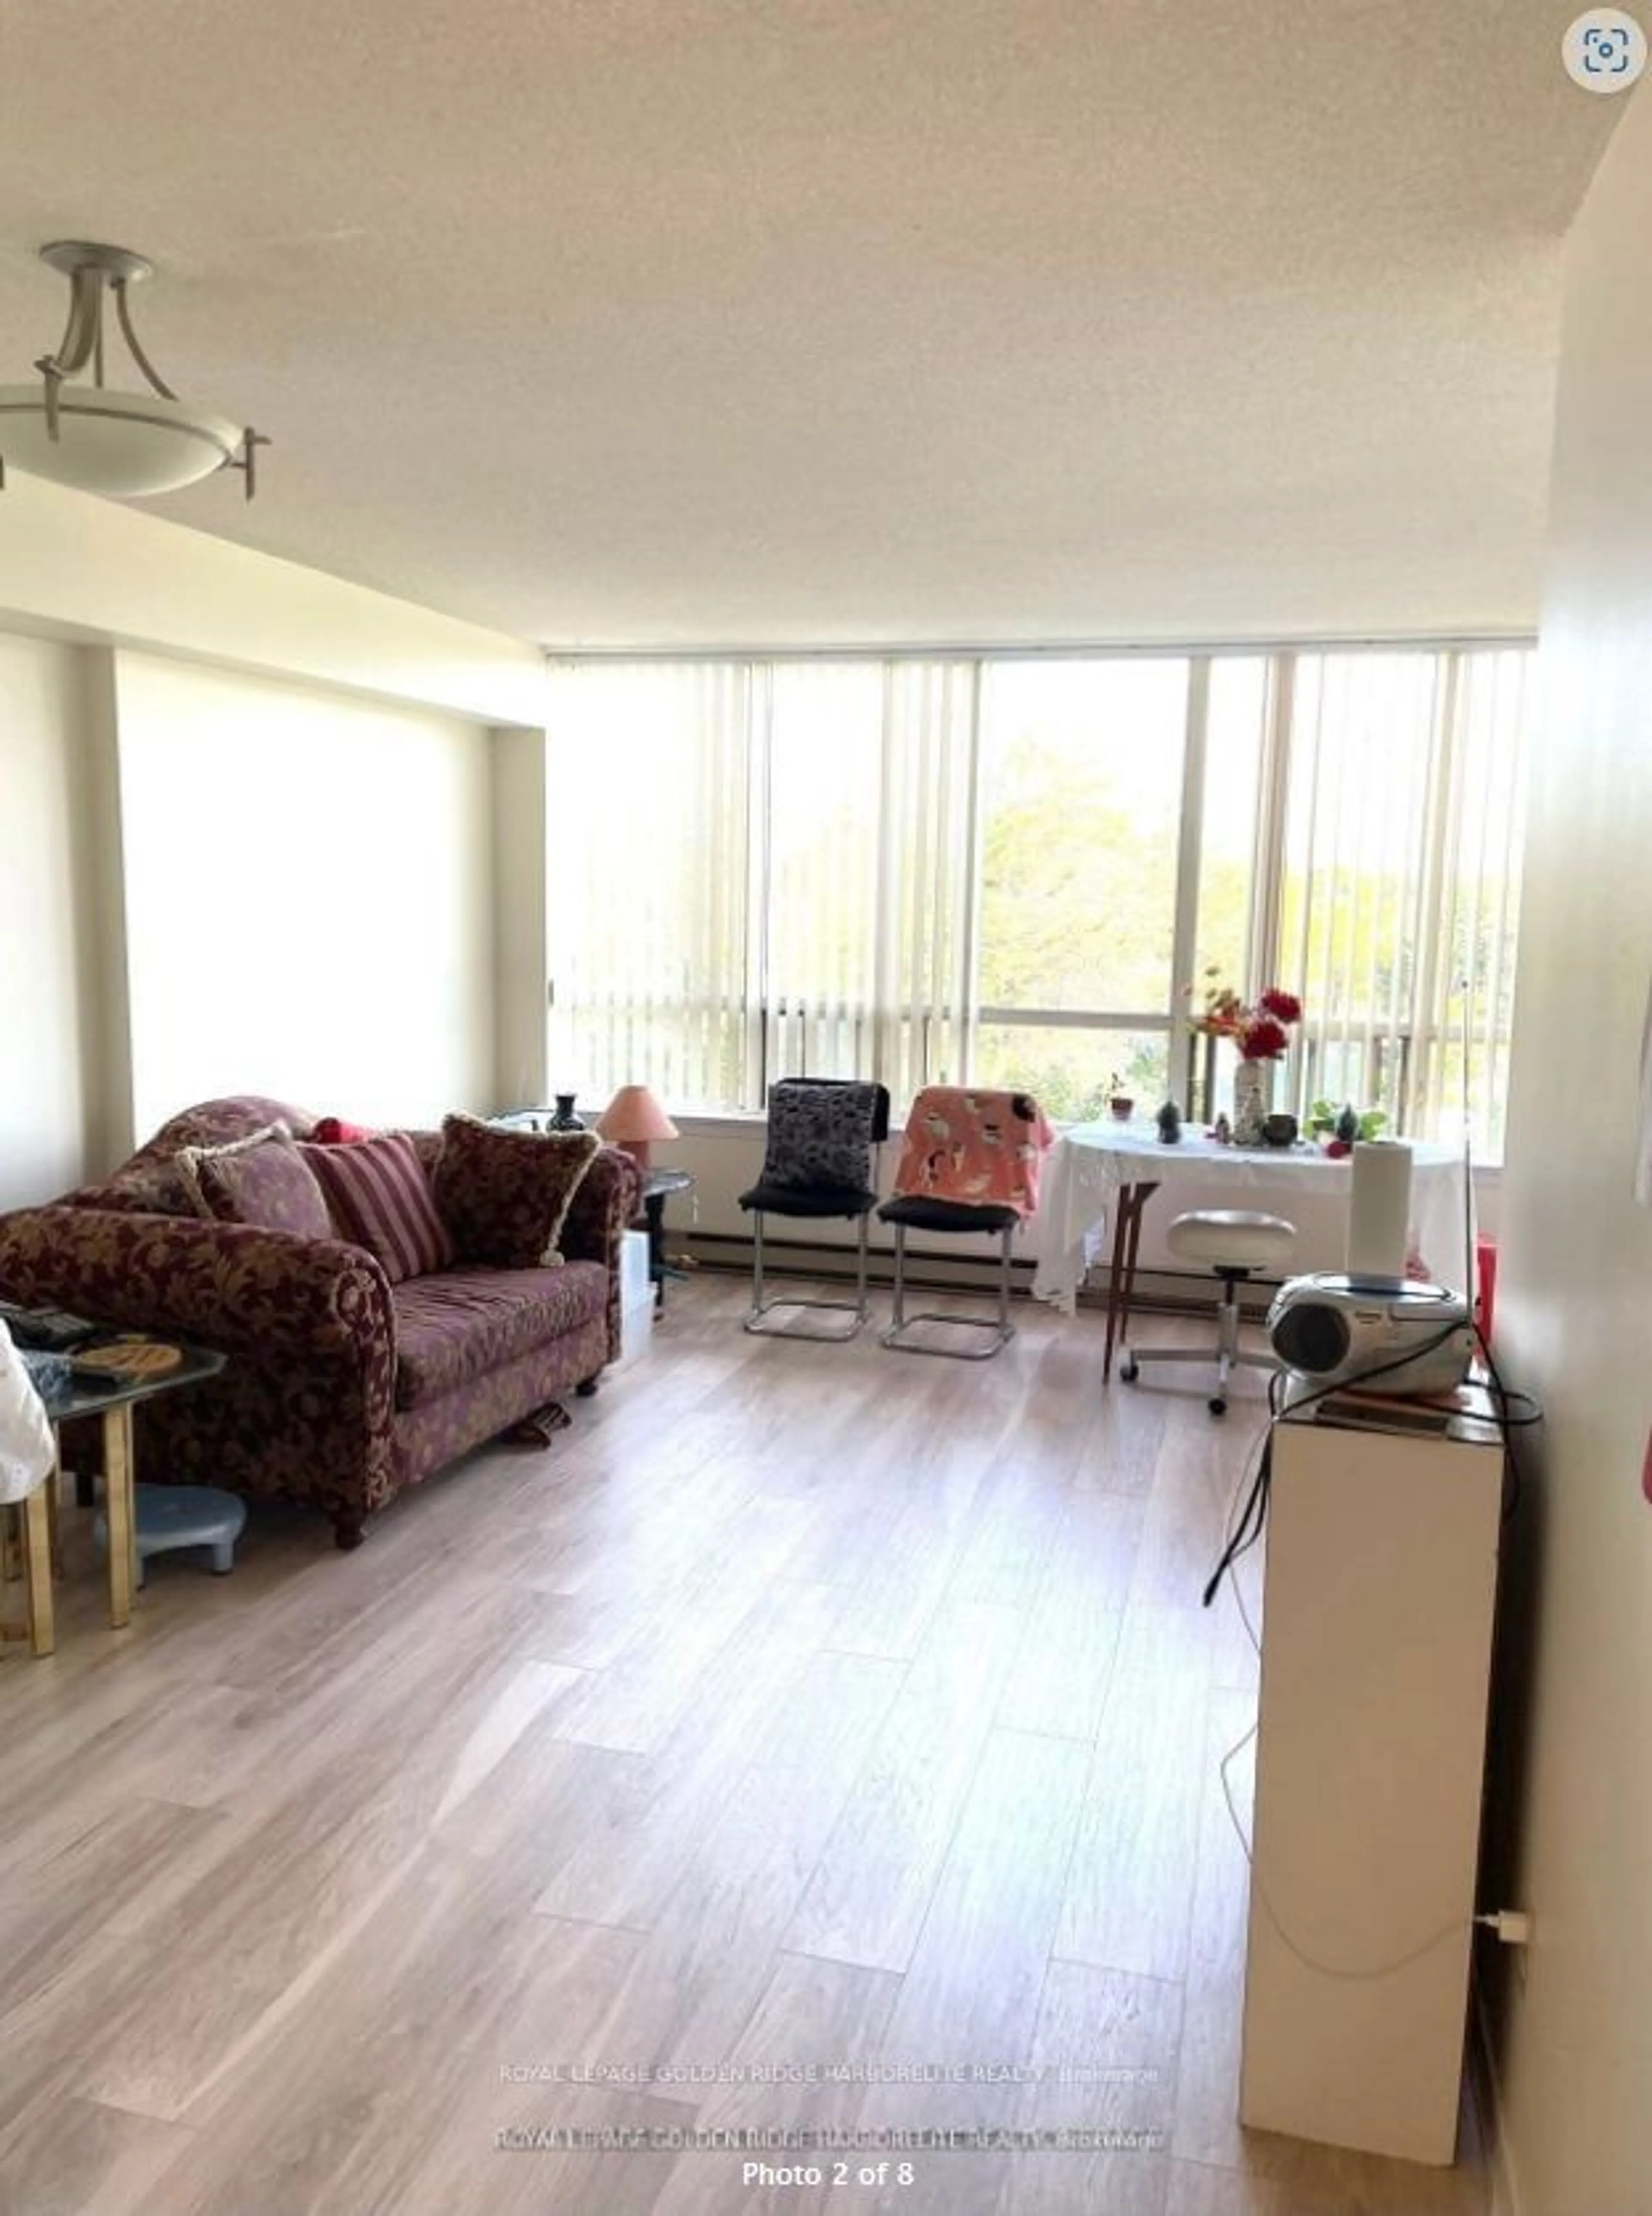 Living room for 150 Alton Towers Circ #308, Toronto Ontario M1V 4X7